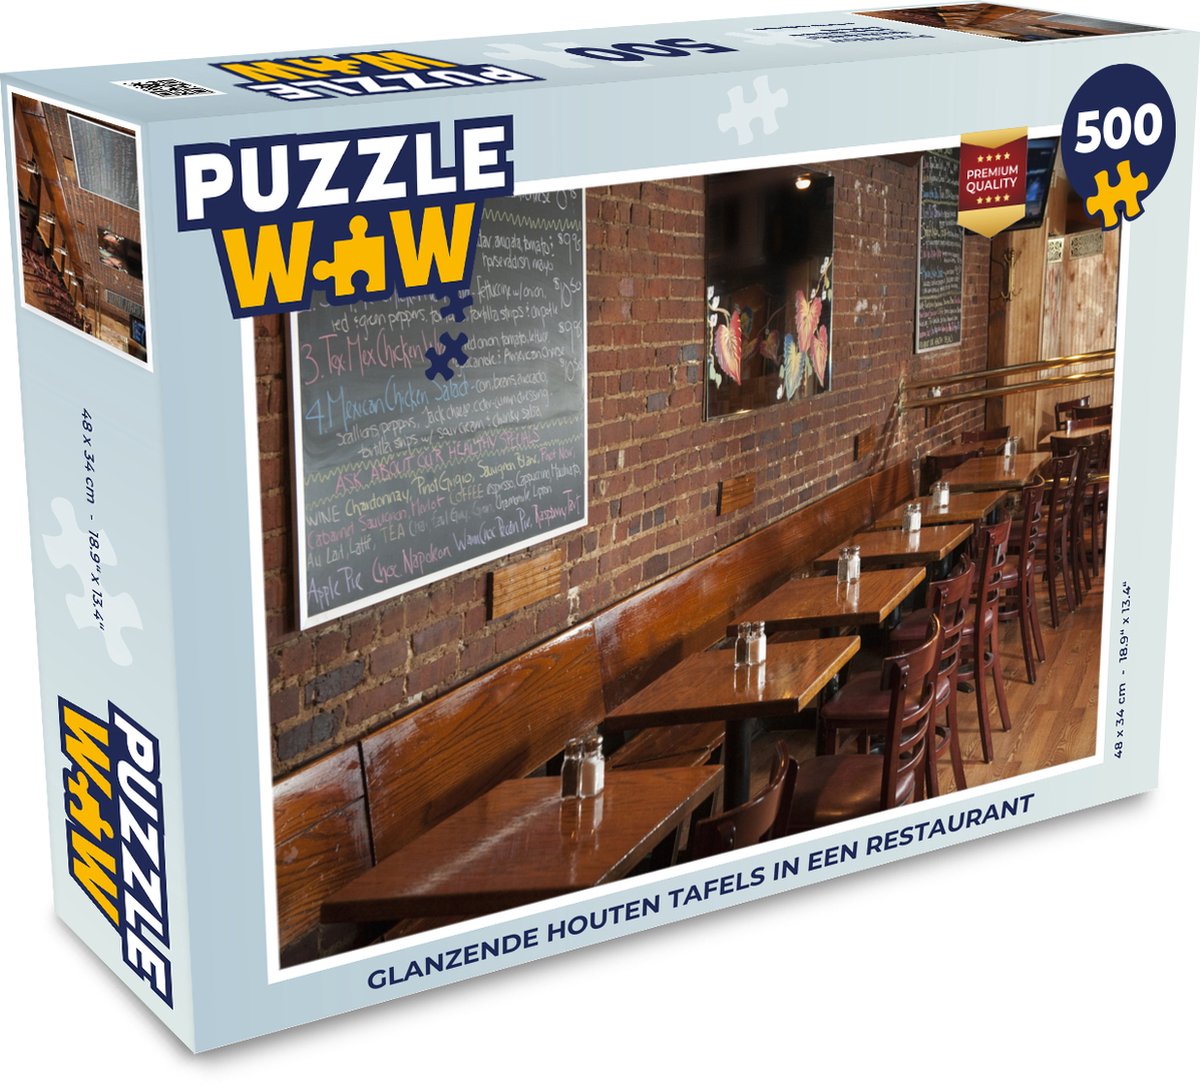 Afbeelding van product Puzzel 500 stukjes Restaurant - Glanzende houten tafels in een restaurant - PuzzleWow heeft +100000 puzzels